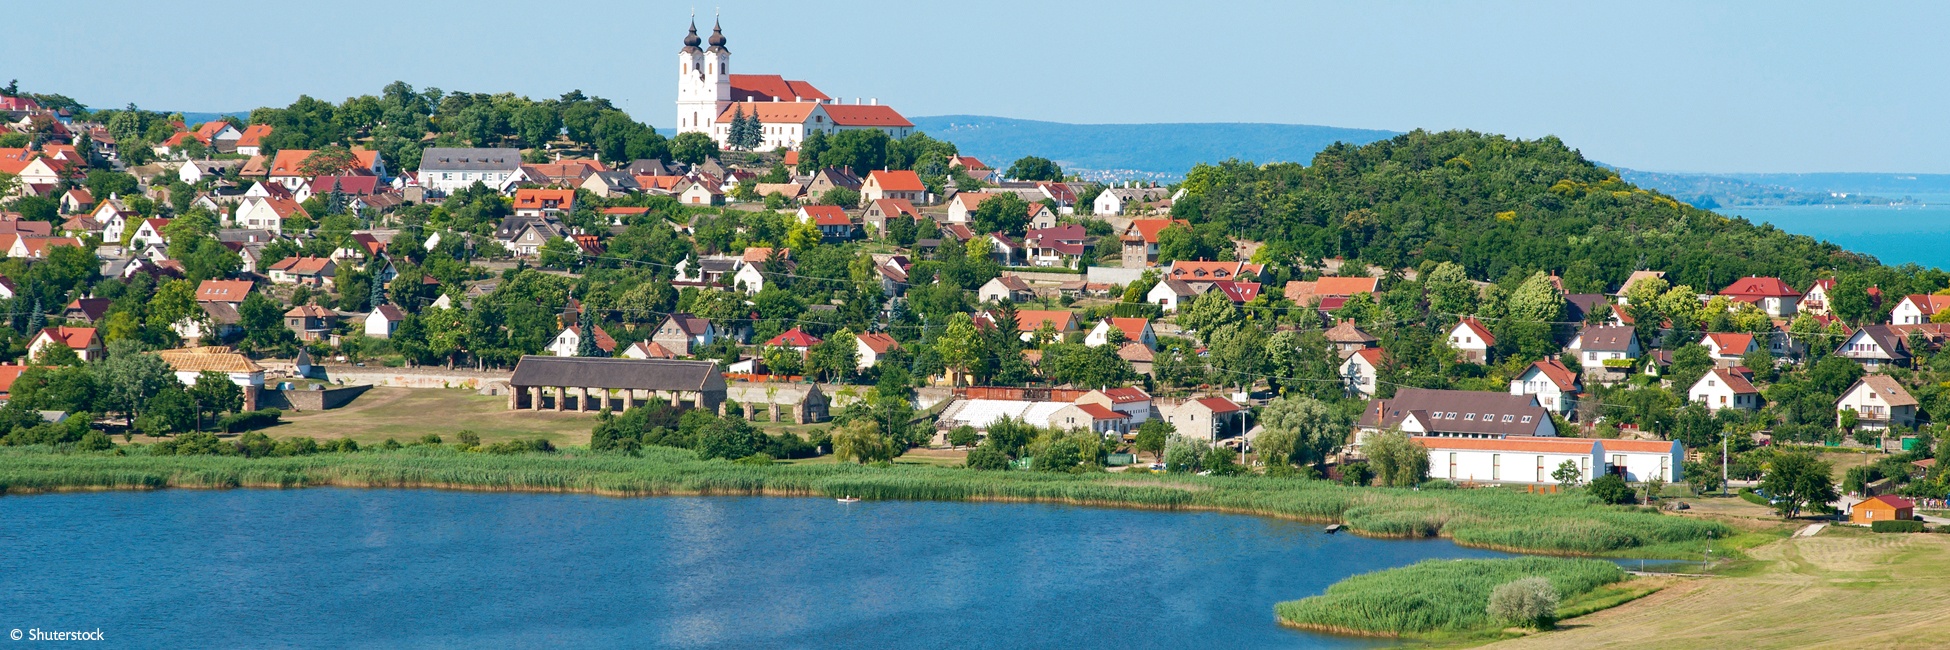 DSA_PP - El majestuoso Danubio, el auténtico Sava y el lago Balaton